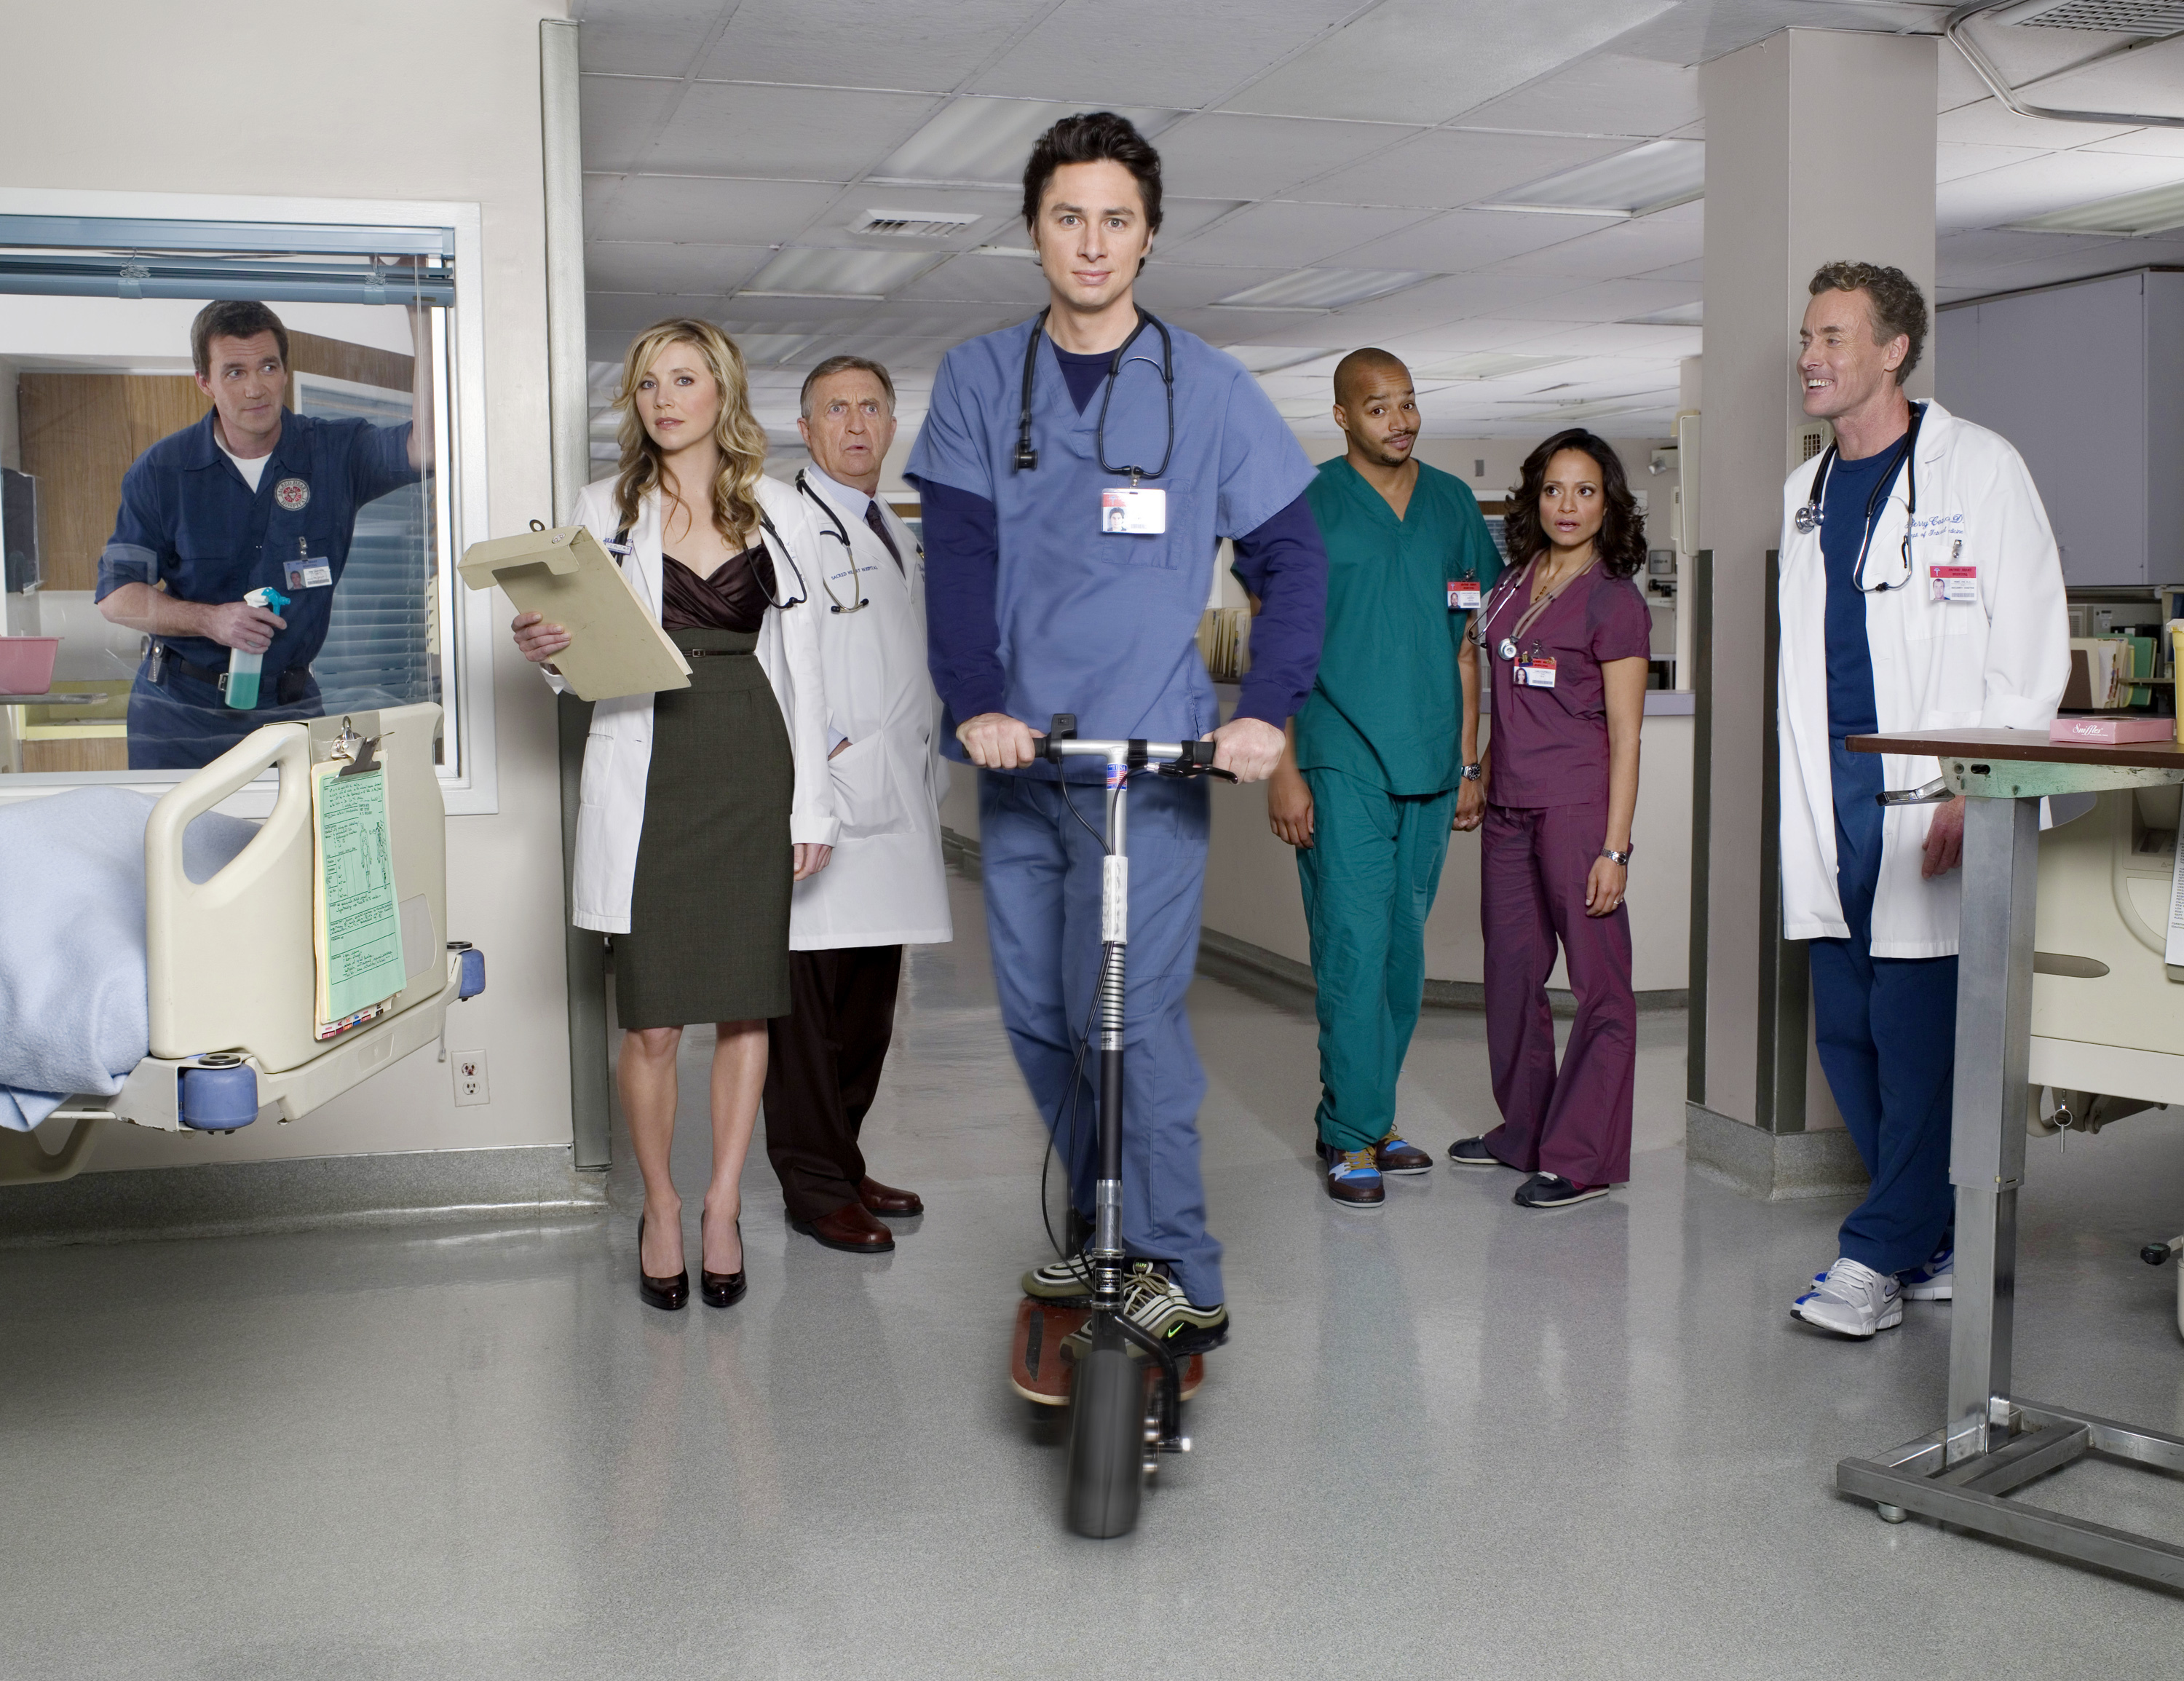 From left: Neil Flynn as The Janitor, Sarah Chalke as Elliot Reid, Ken Jenkins as Dr. Bob Kelso, Zach Braff as John 